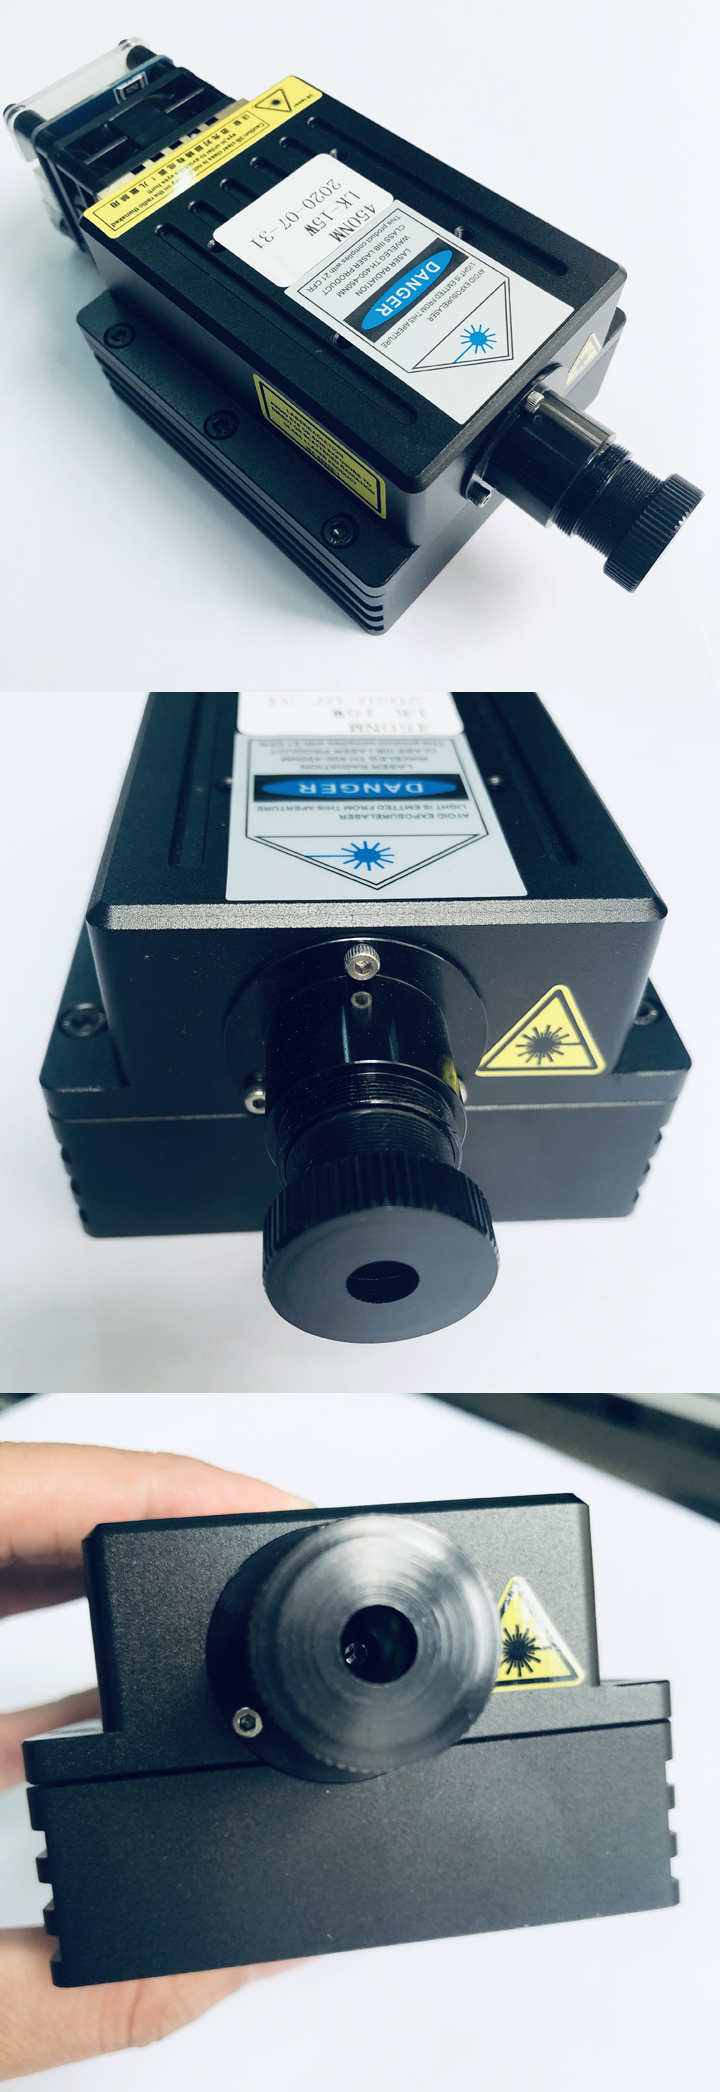 Module laser bleu le plus puissant du monde 450nm 15W pour gravure